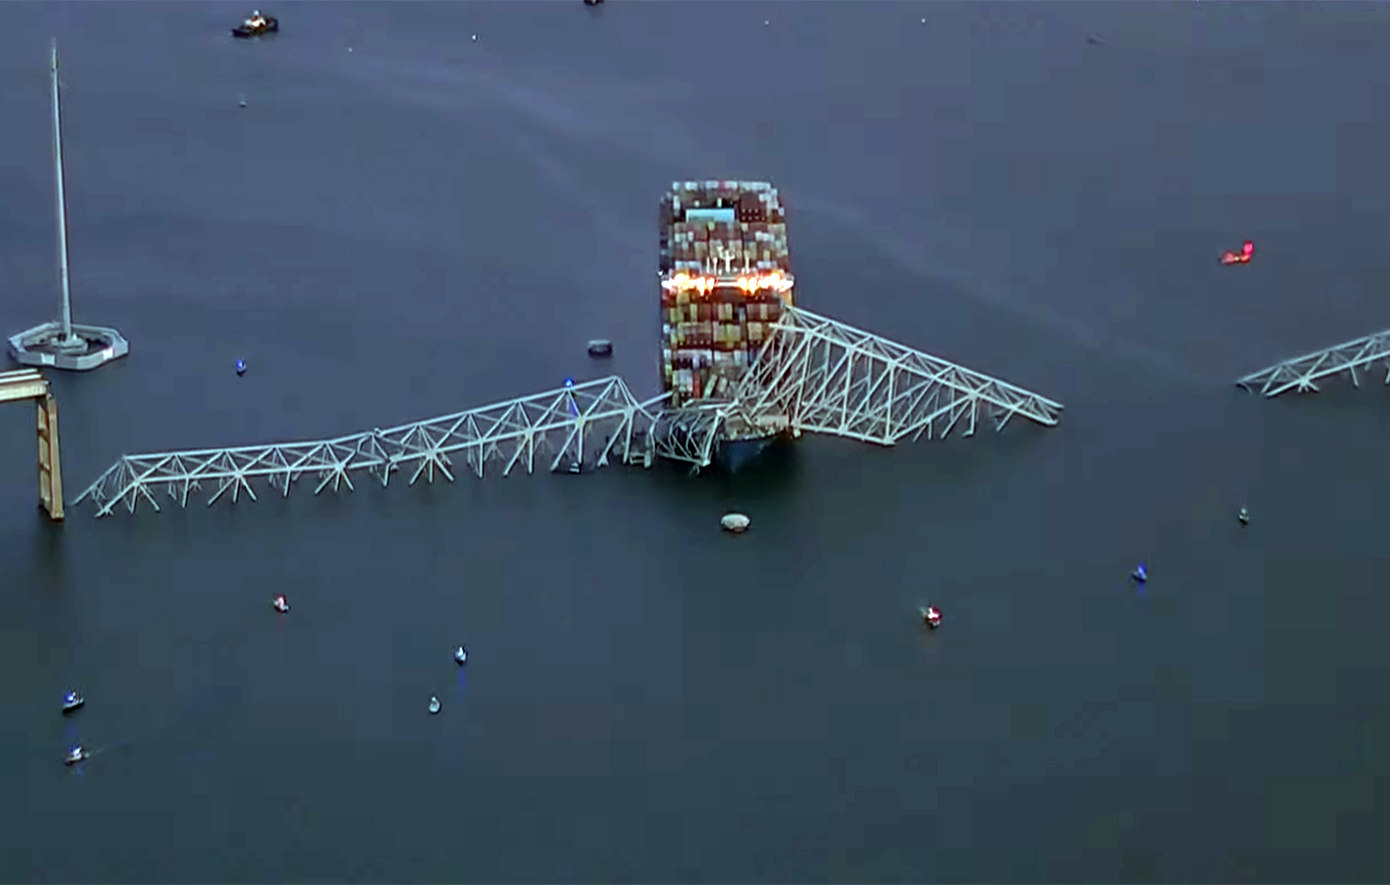 Τι συνέβη με το γιγάντιο πλοίο και κατέρρευσε η γέφυρα στη Βαλτιμόρη – Ειδικοί αναλύουν και κάνουν σύγκριση με το Ρίο-Αντίρριο